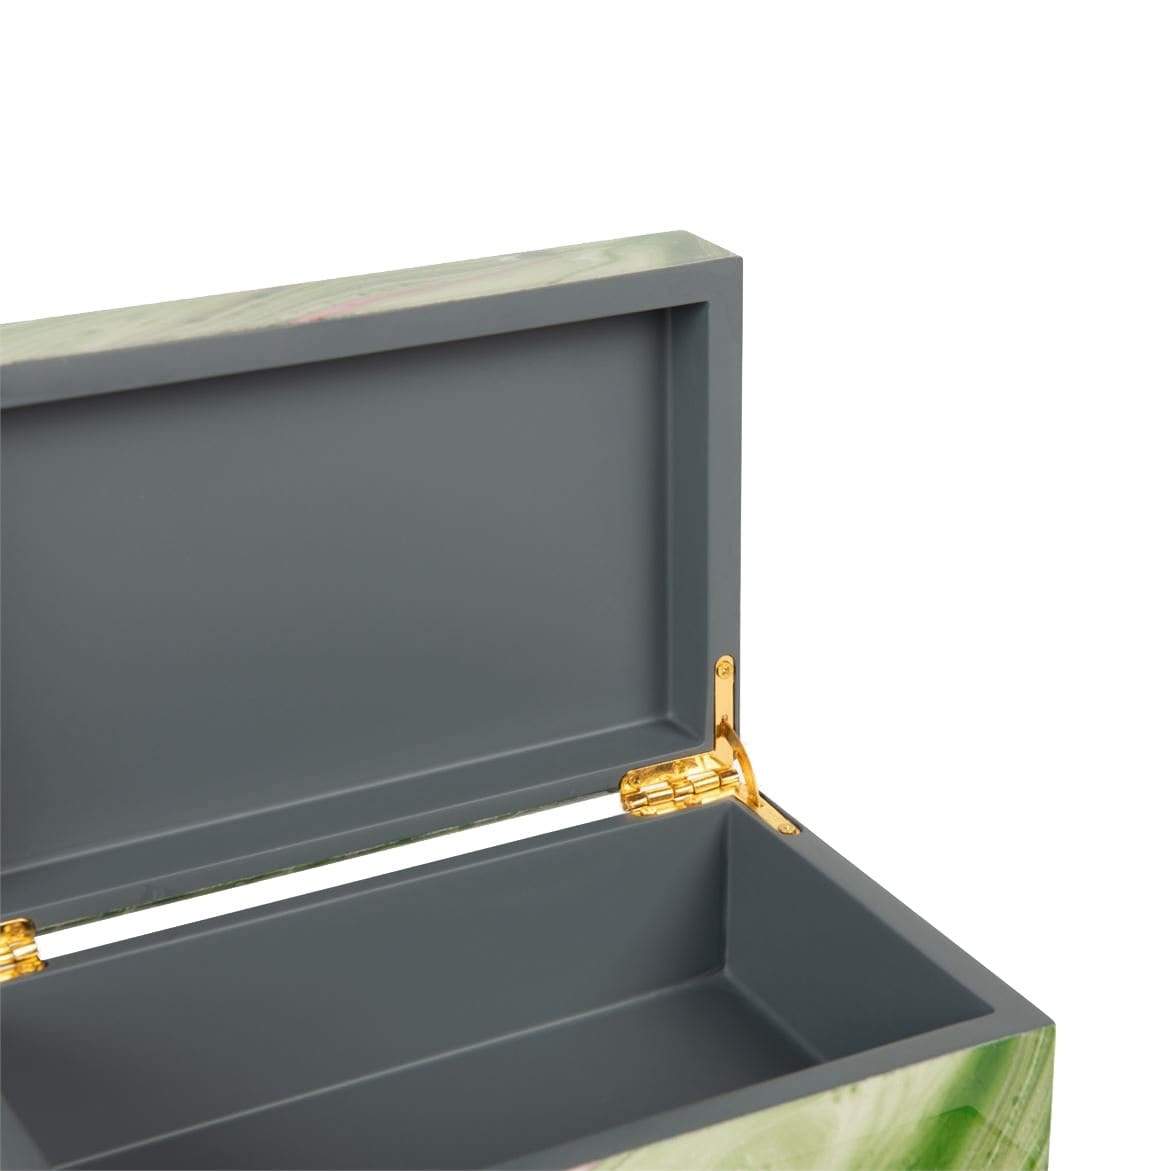 Made Goods Noelle Box Set - Green Swirl Lacquered Resin Decor made-goods-OBJNOELLEBXGNS2